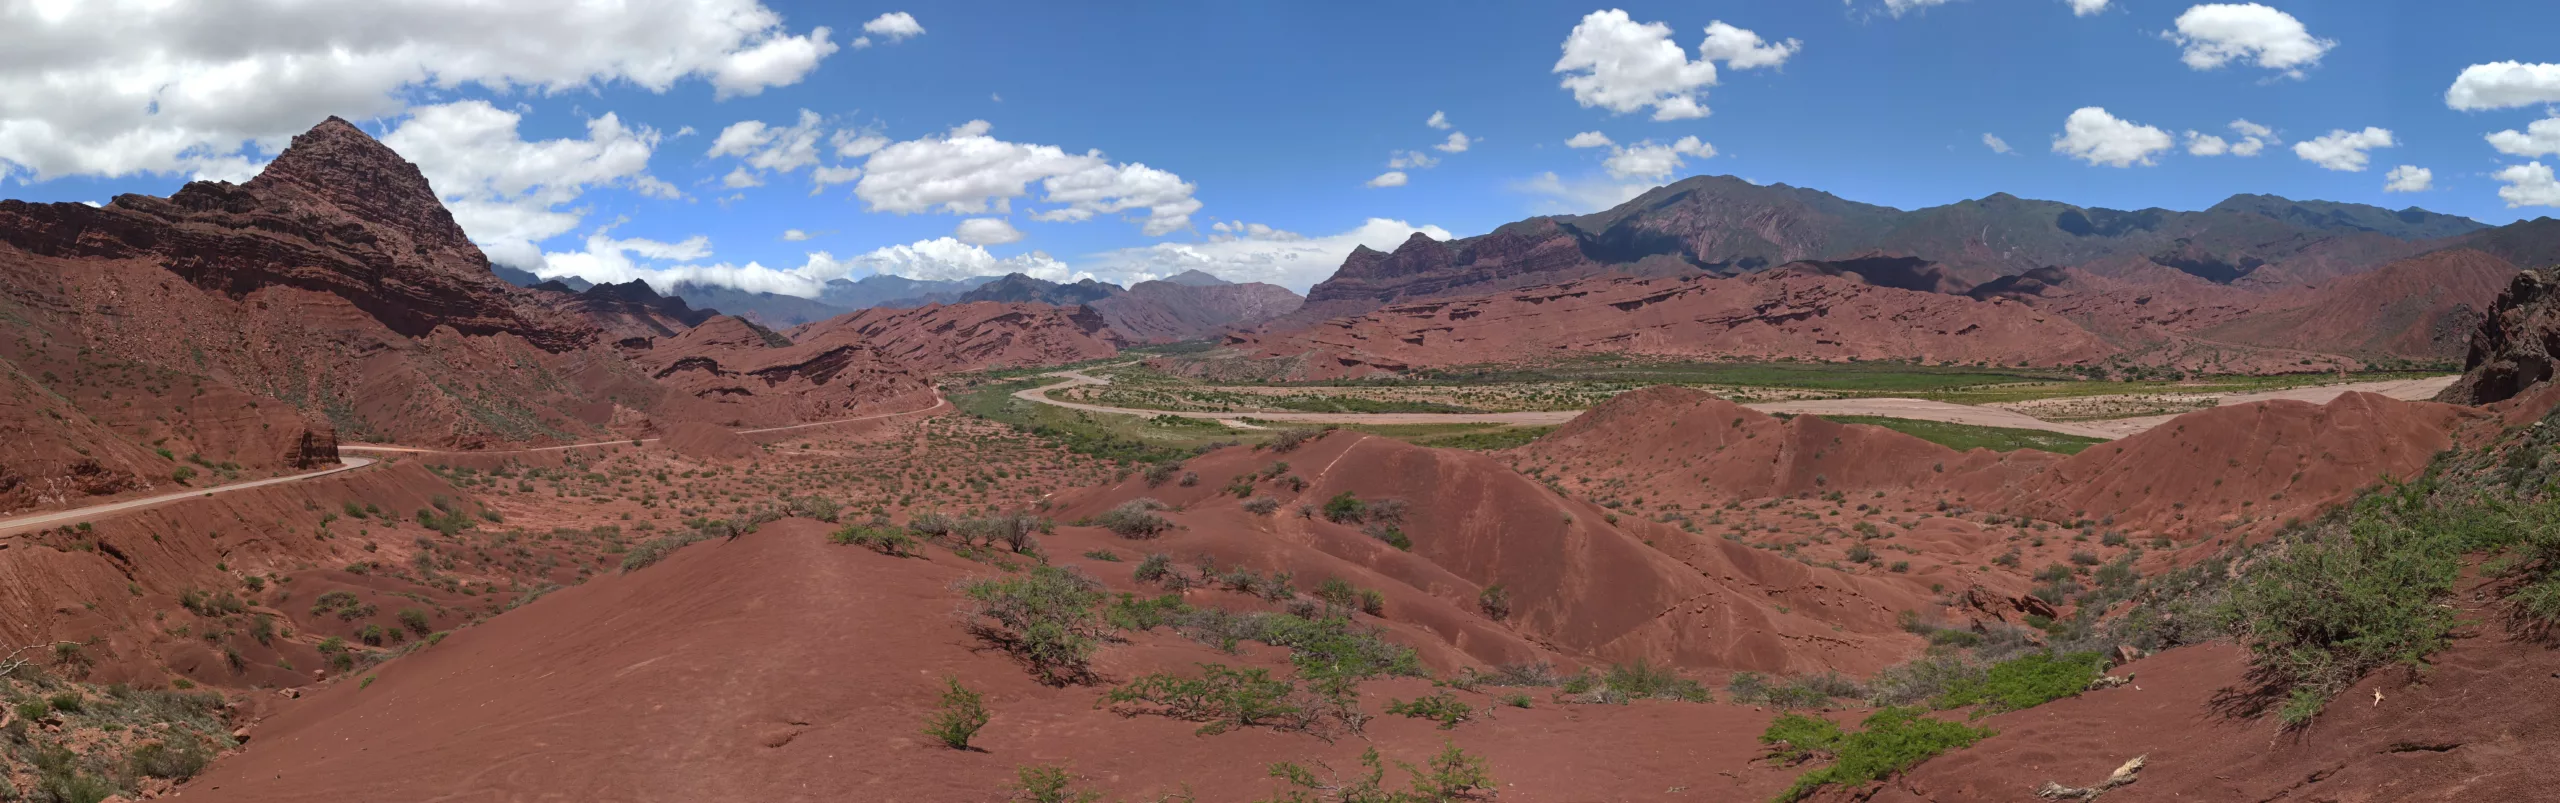 panorama de paysage rouges désertiques typique lors d'un road trip dans nord-ouest argentine